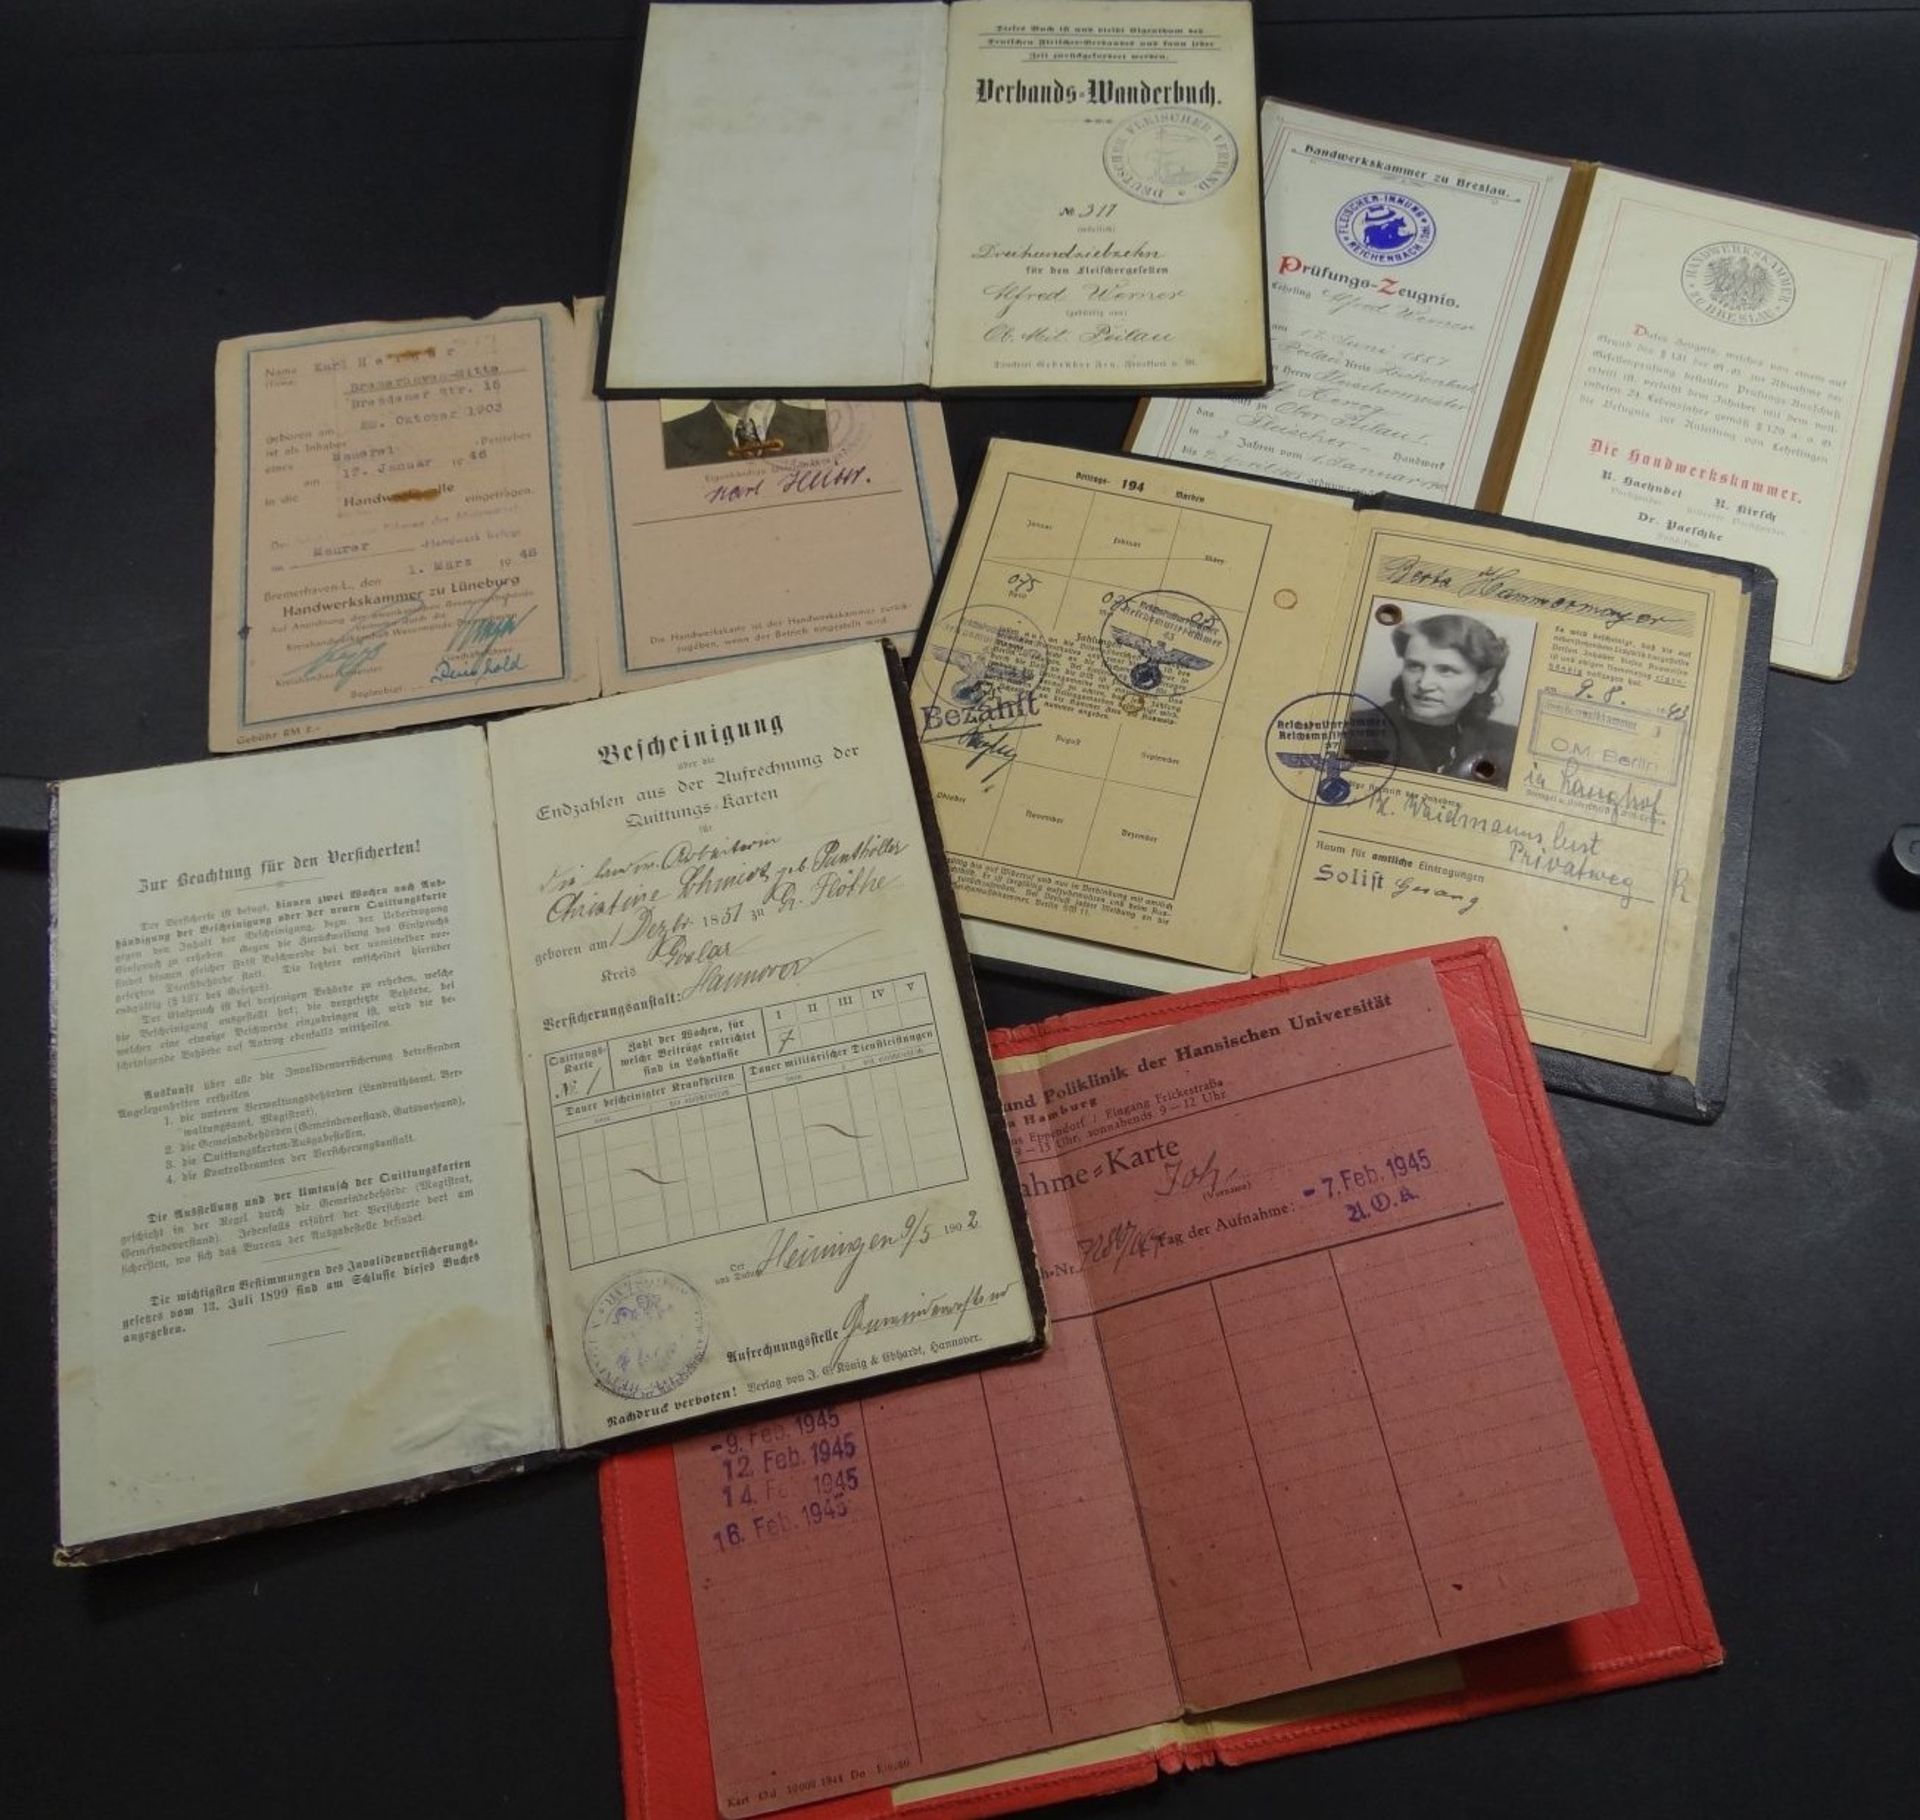 Lot Papiere, Meisterbrief, Wander-Buch, Handwerskammer, Reichsmusikkammer etc., ca. 1930-1945